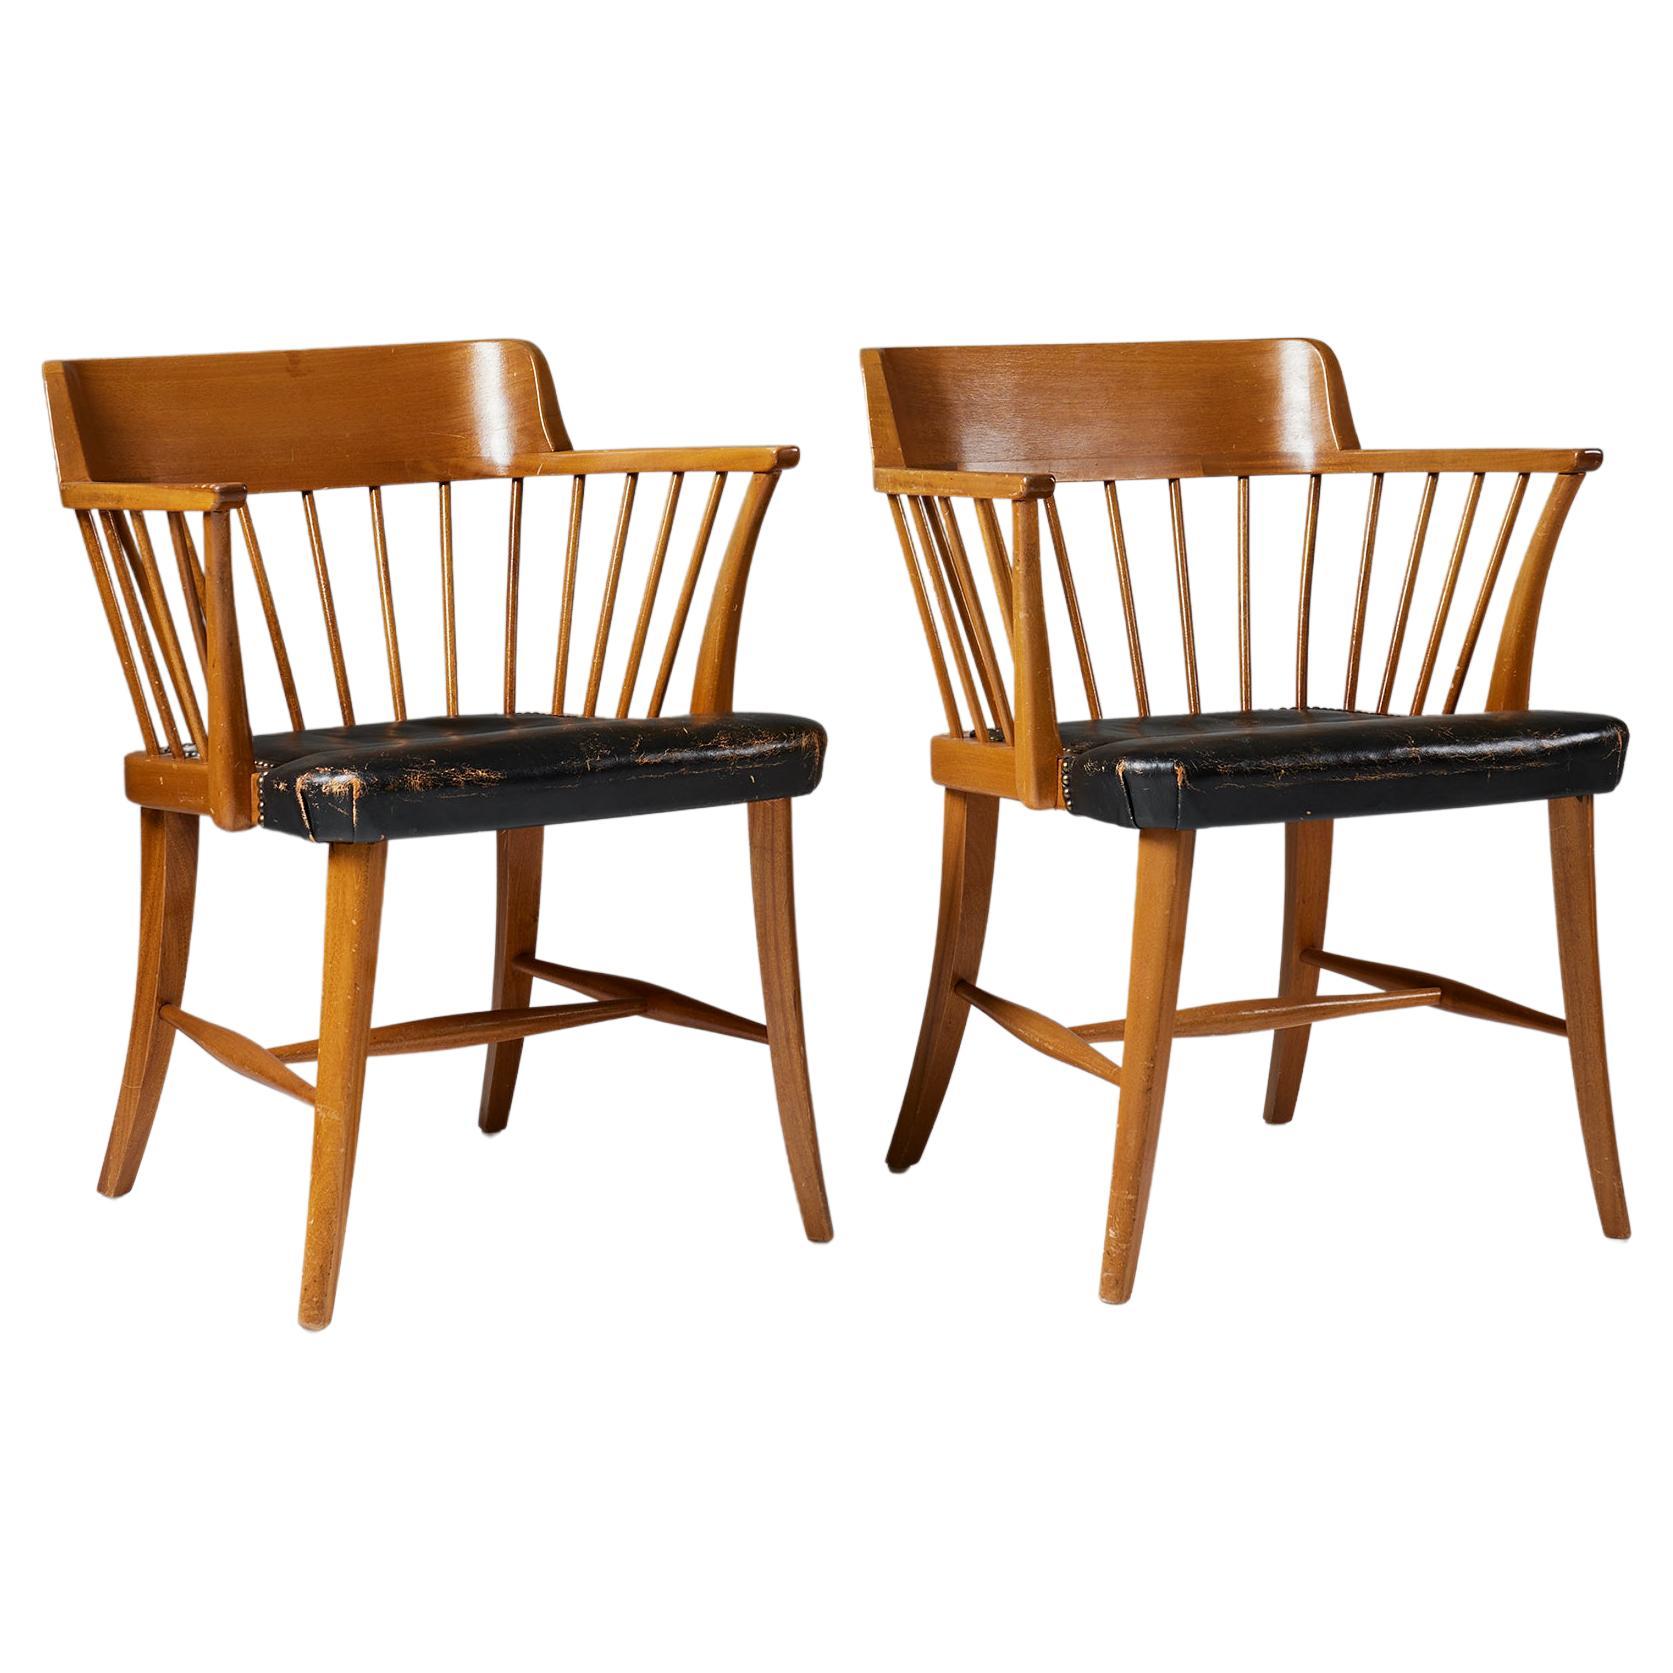 Paire de fauteuils modèle 789B "Captain's Chair" conçus par Josef Frank